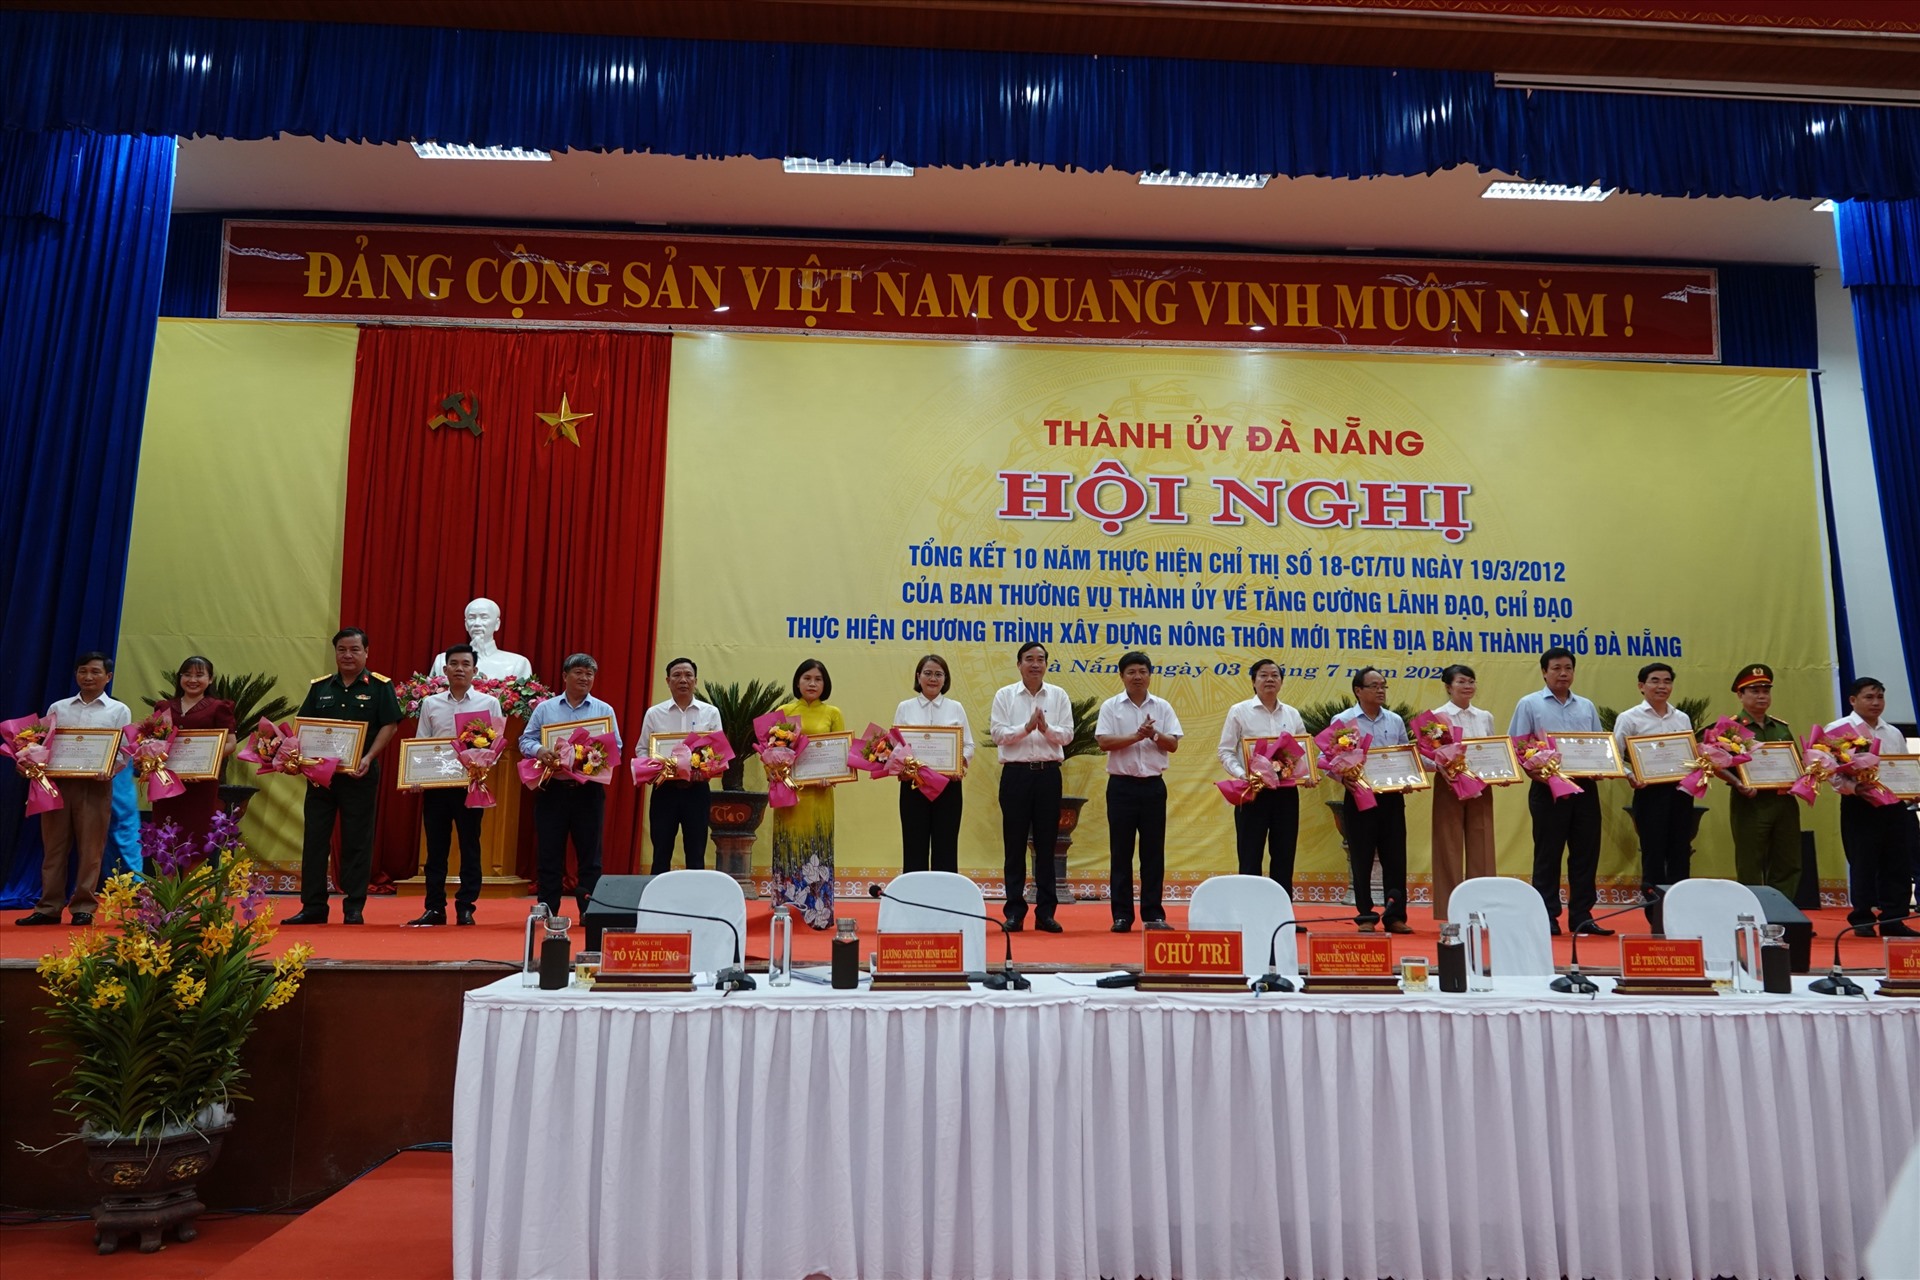 Hội nghị Tổng kết 10 năm thực hiện Chỉ thị số 18- CT/TU ngày 19.3.2012 của Ban thường vụ Thành ủy về tăng cường lãnh đạo, chỉ đạo thực hiện chương trình xây dựng nông thôn mới trên địa bàn TP Đà Nẵng.